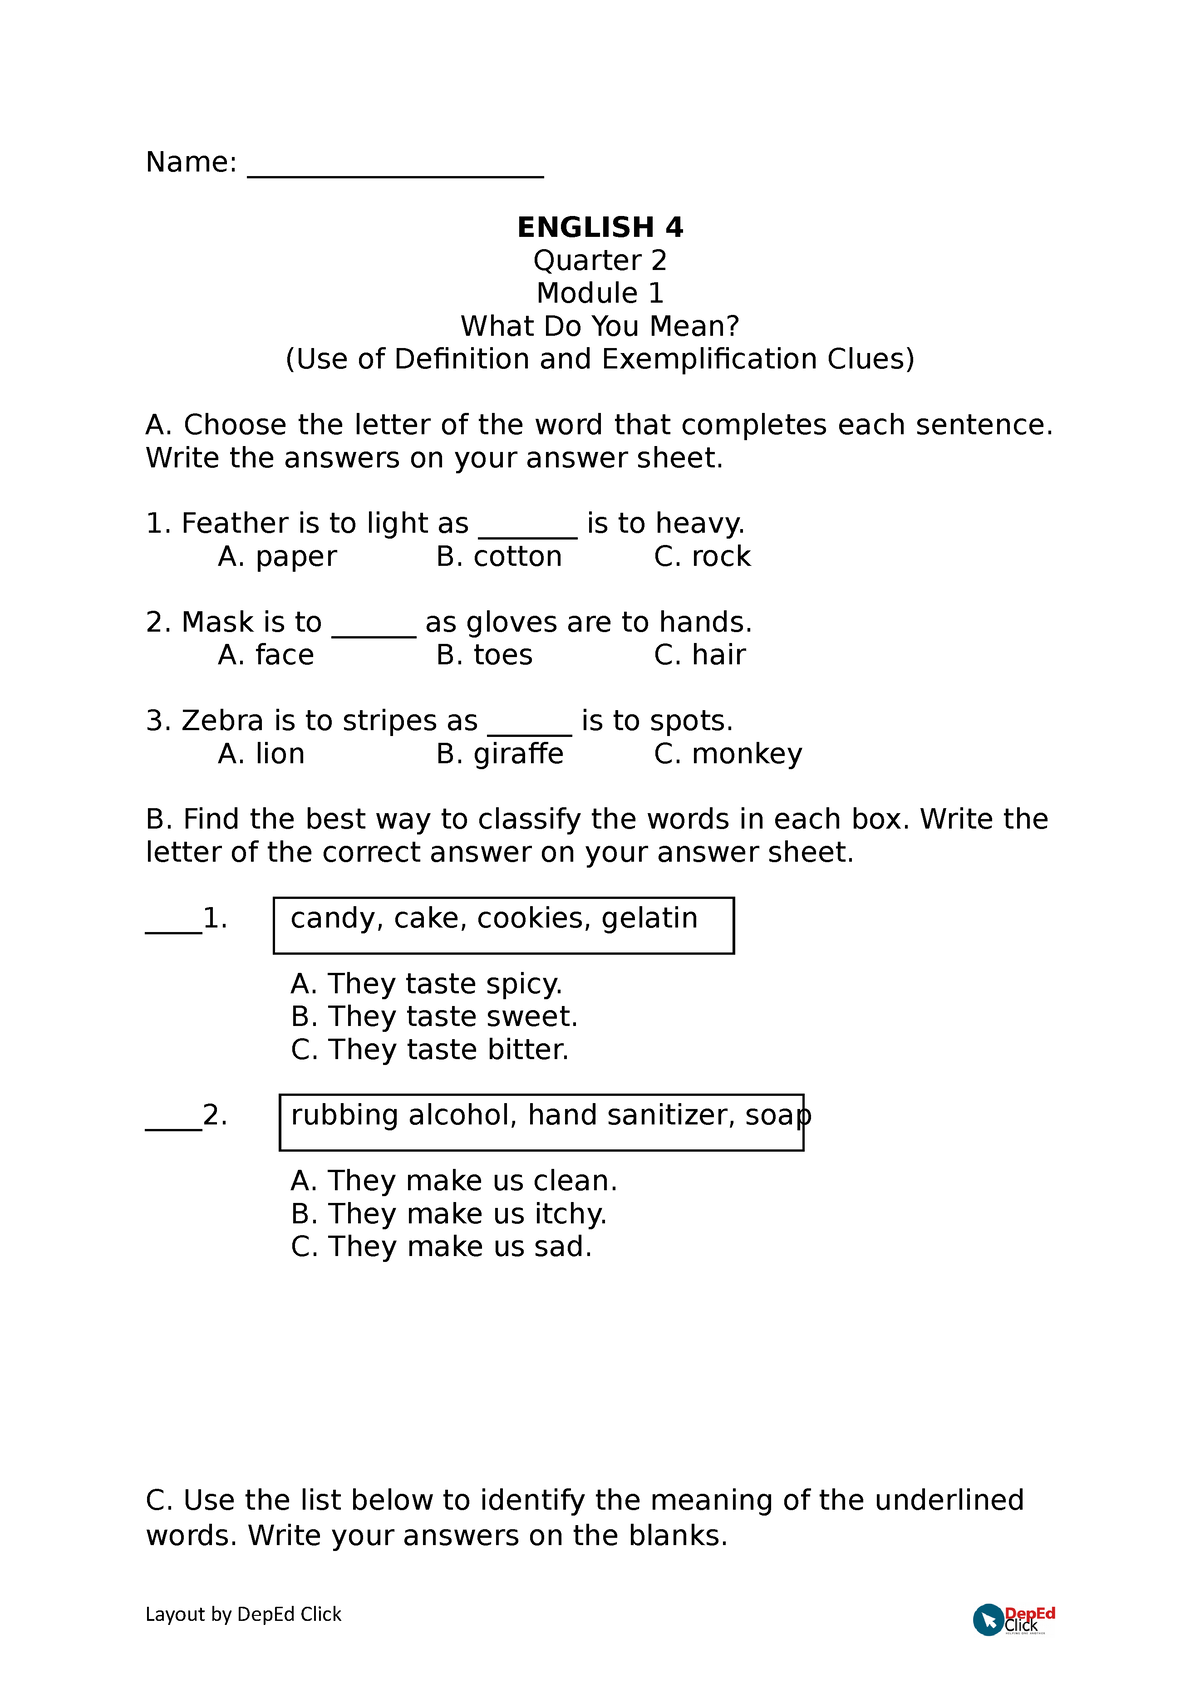 q2-activity-sheets-grade-4-name-english-4